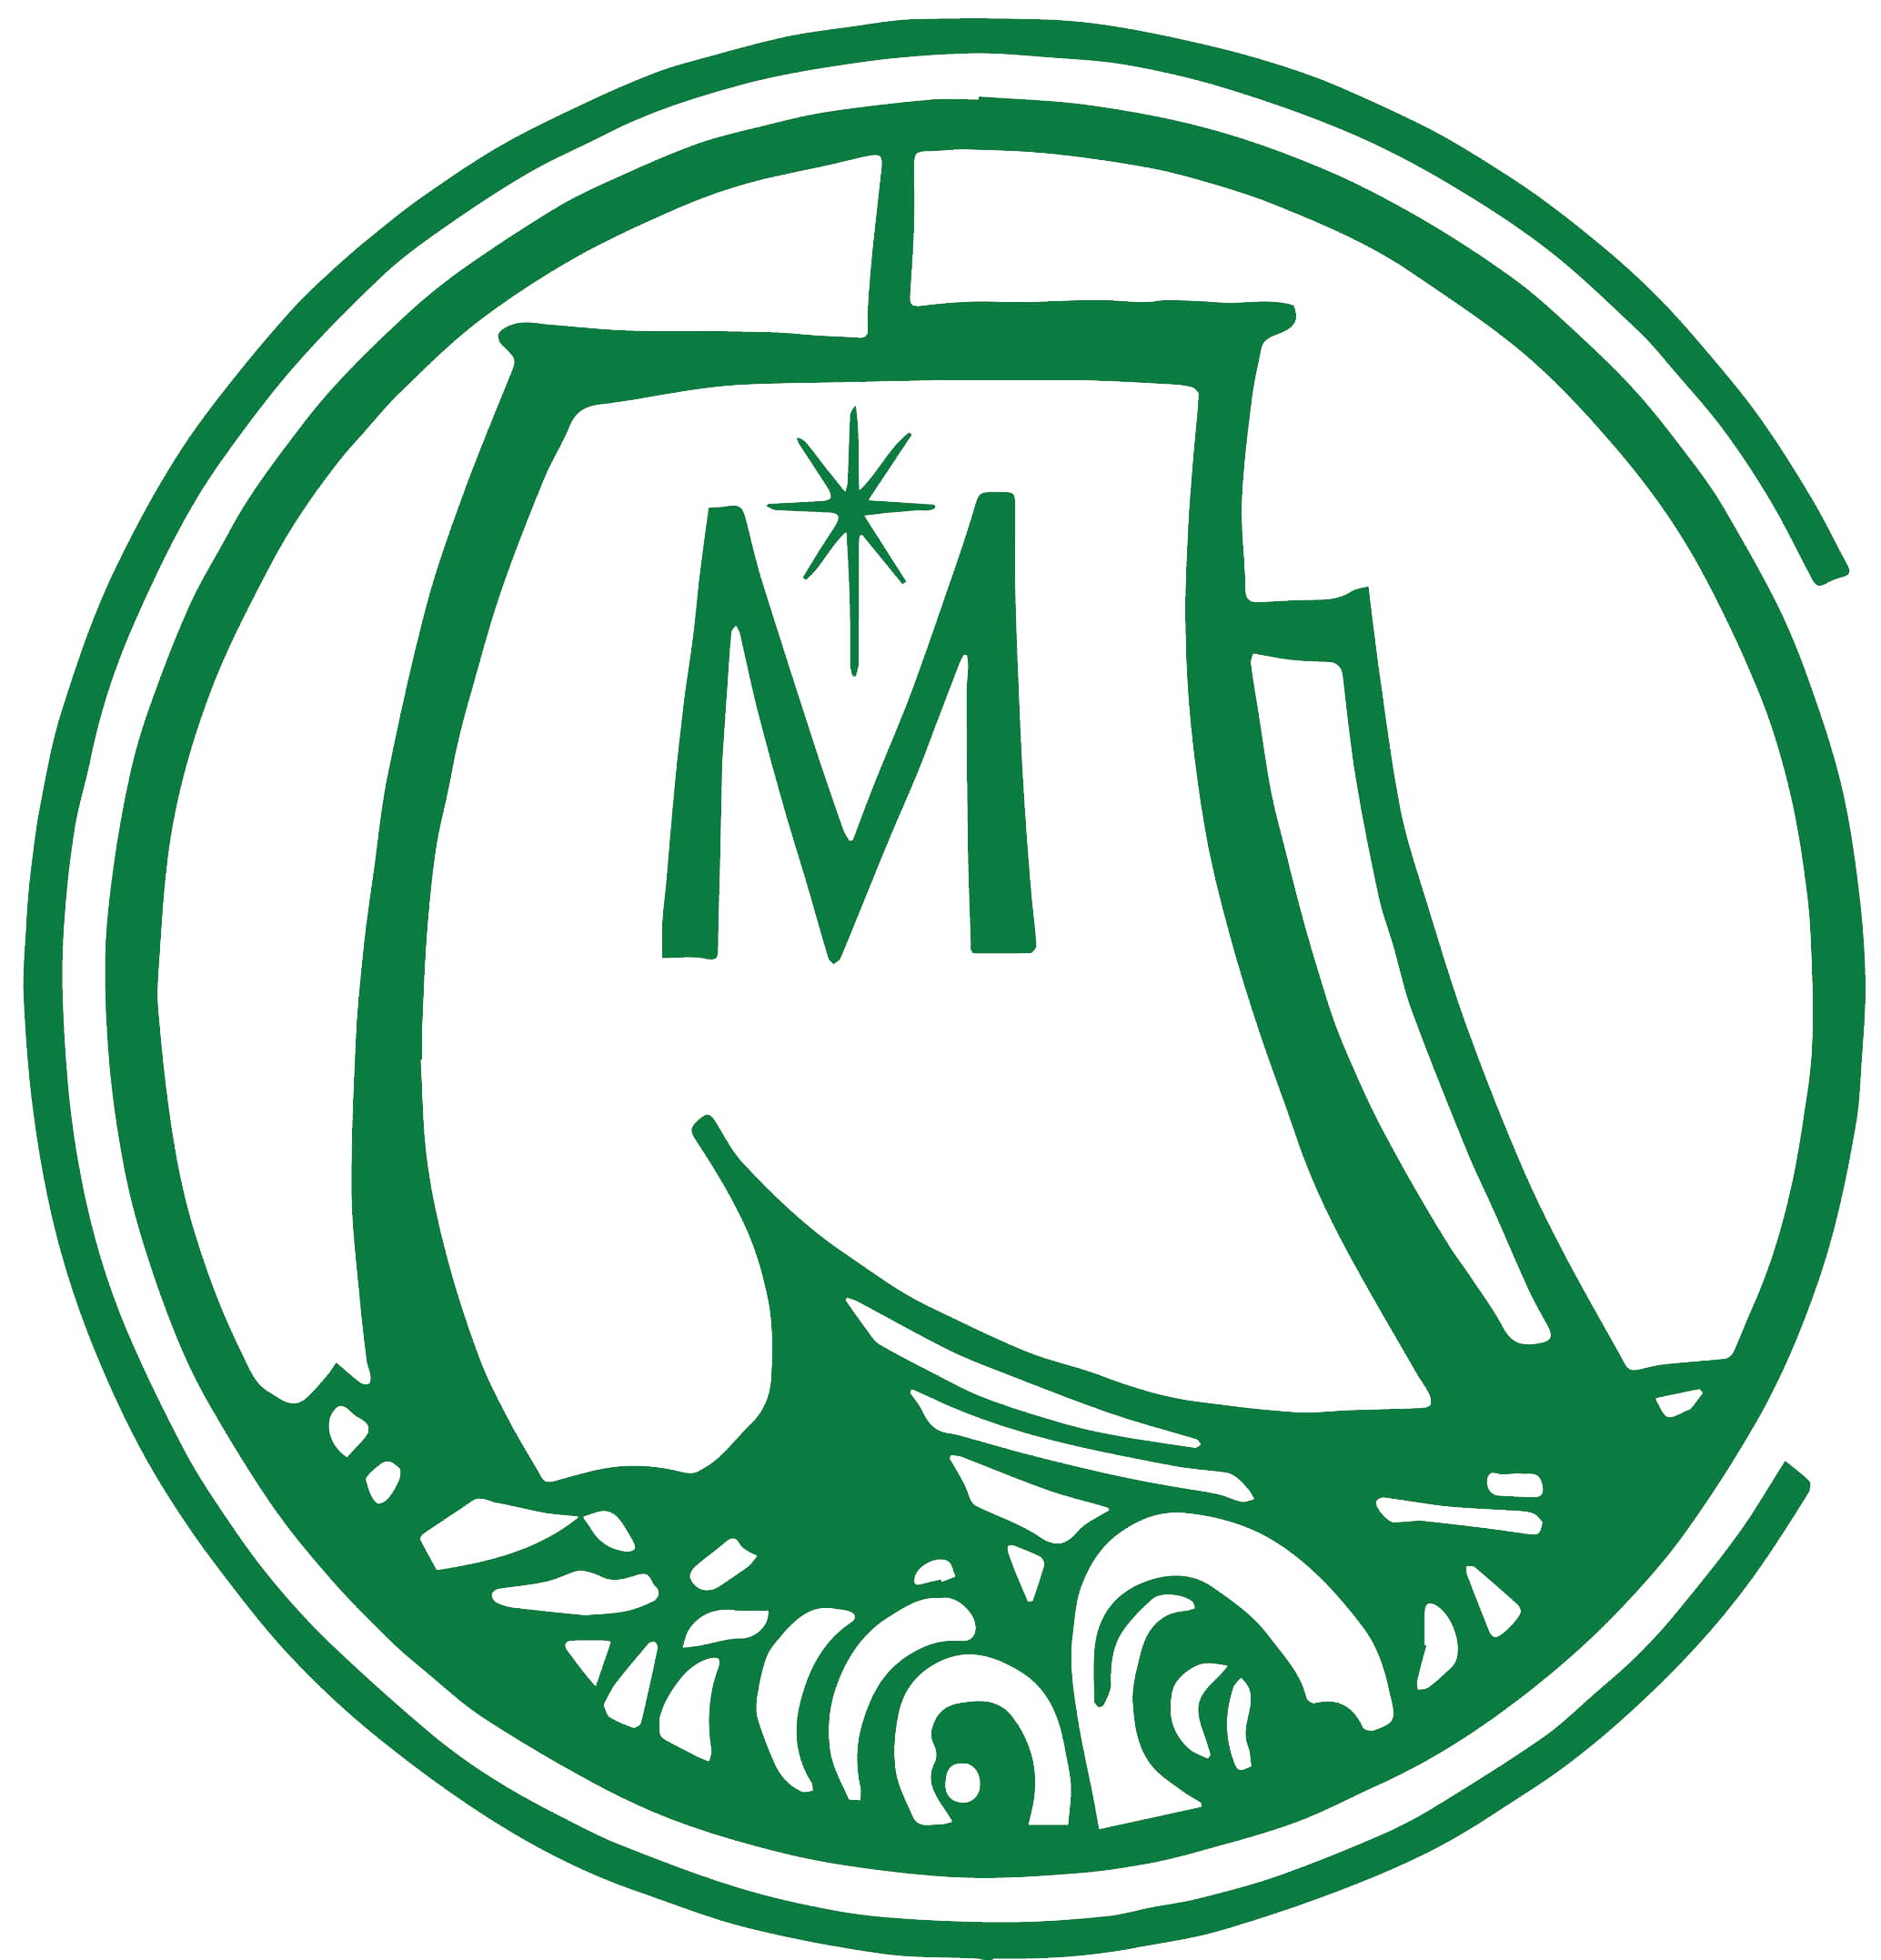 columbuscatholic.org-logo